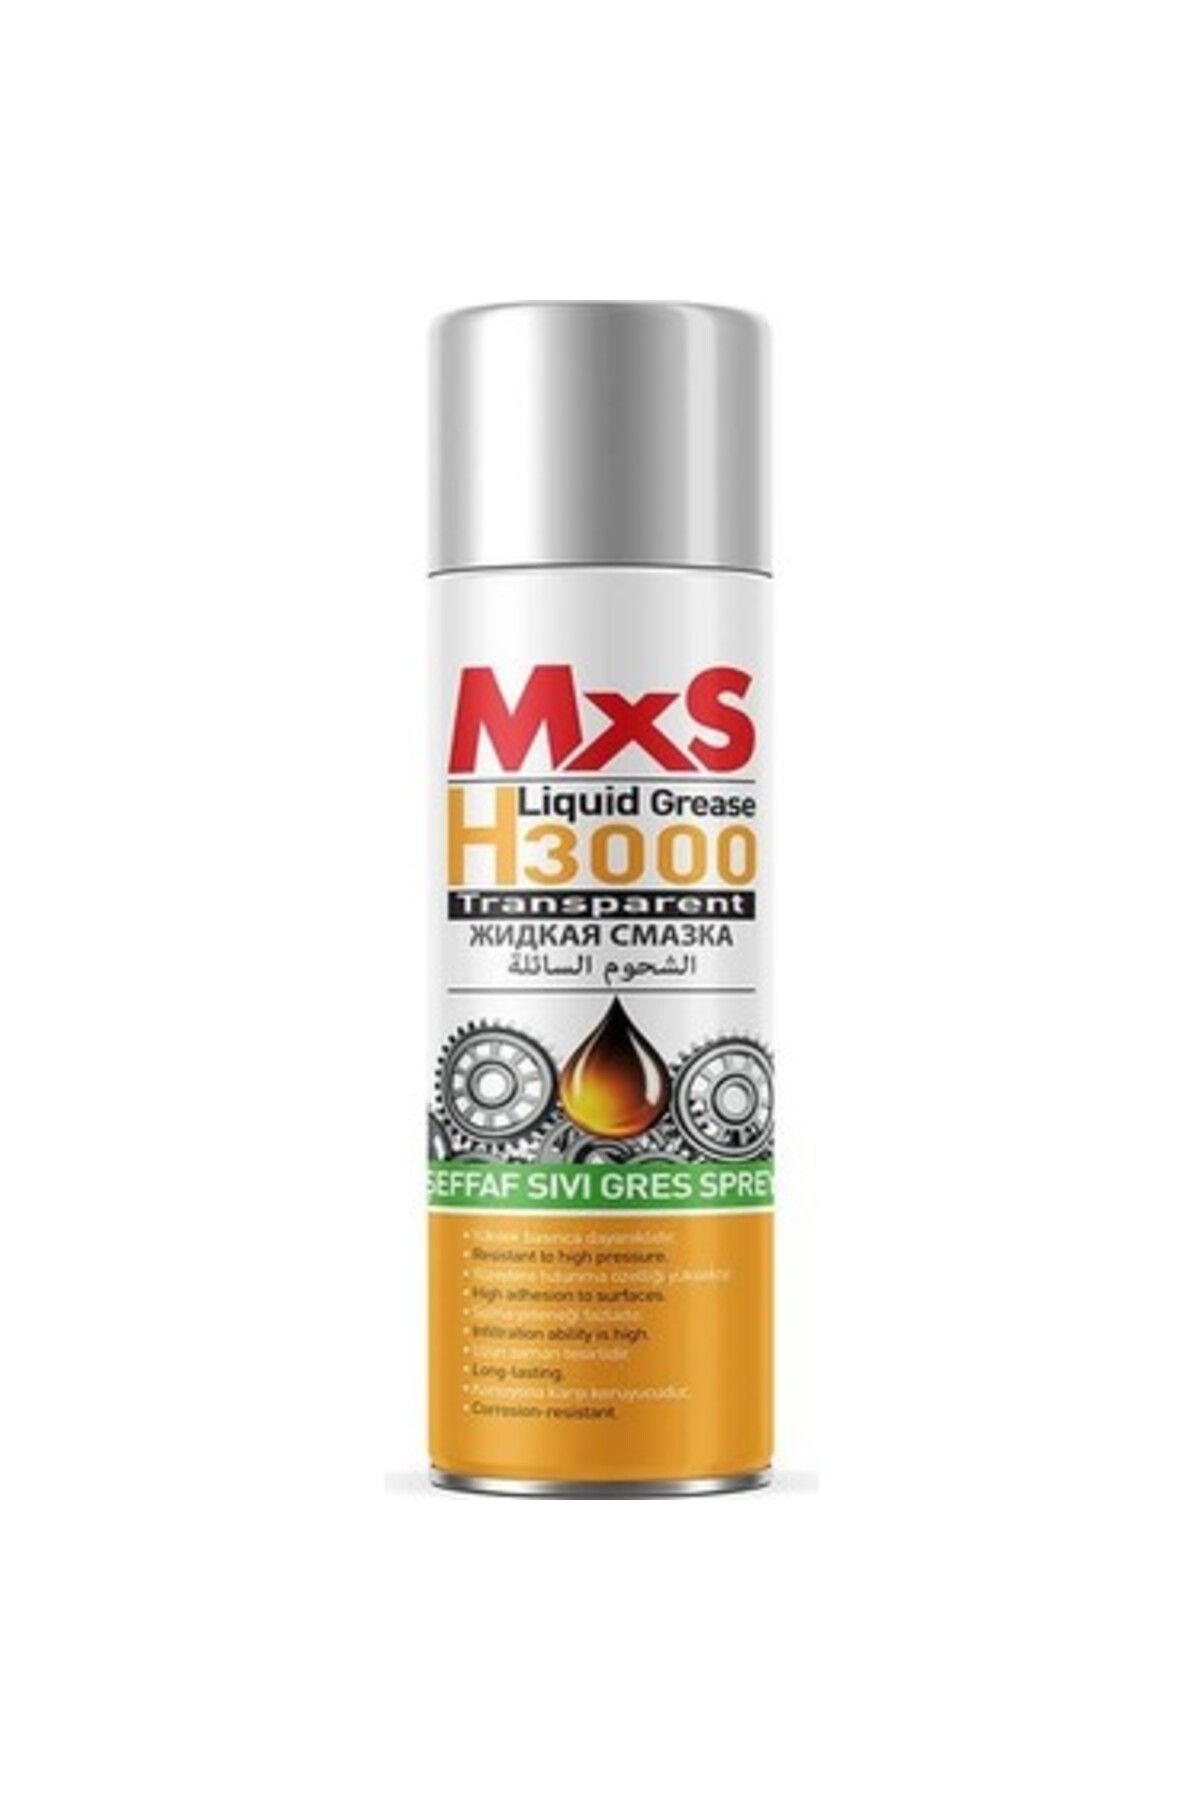 MxS H3000 Sıvı Gres 200ml